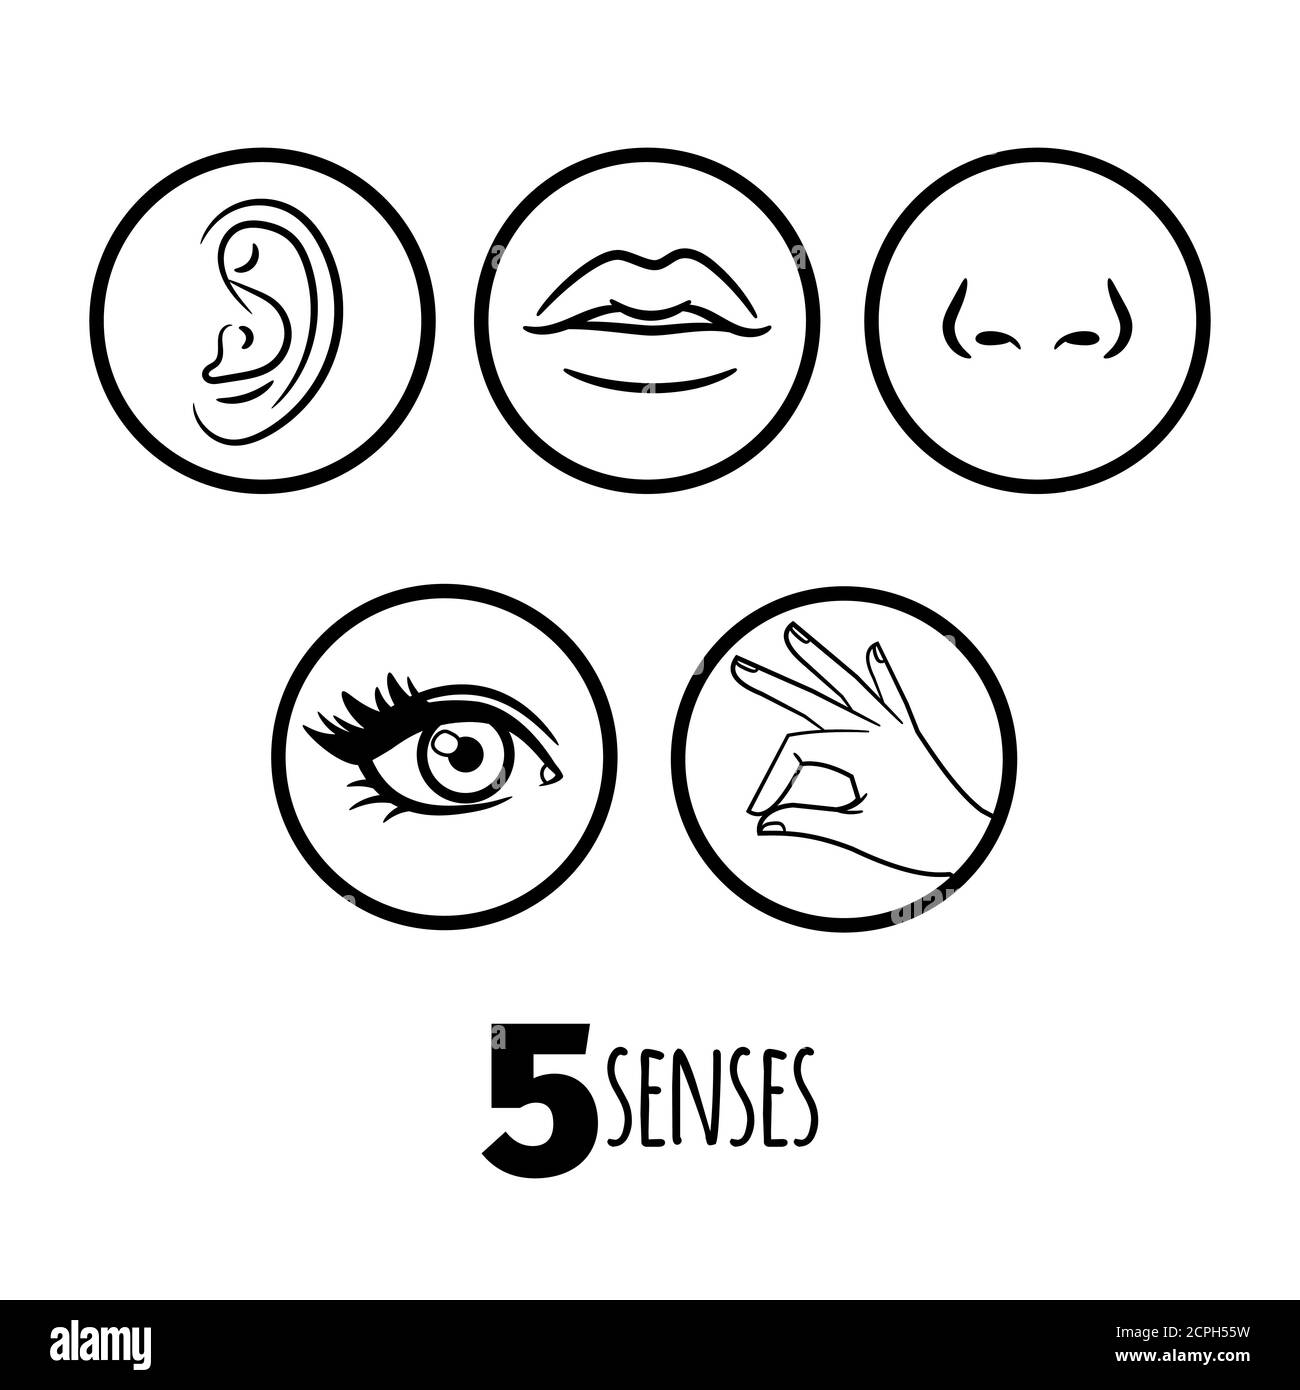 The five senses taste Banque d'images vectorielles - Alamy